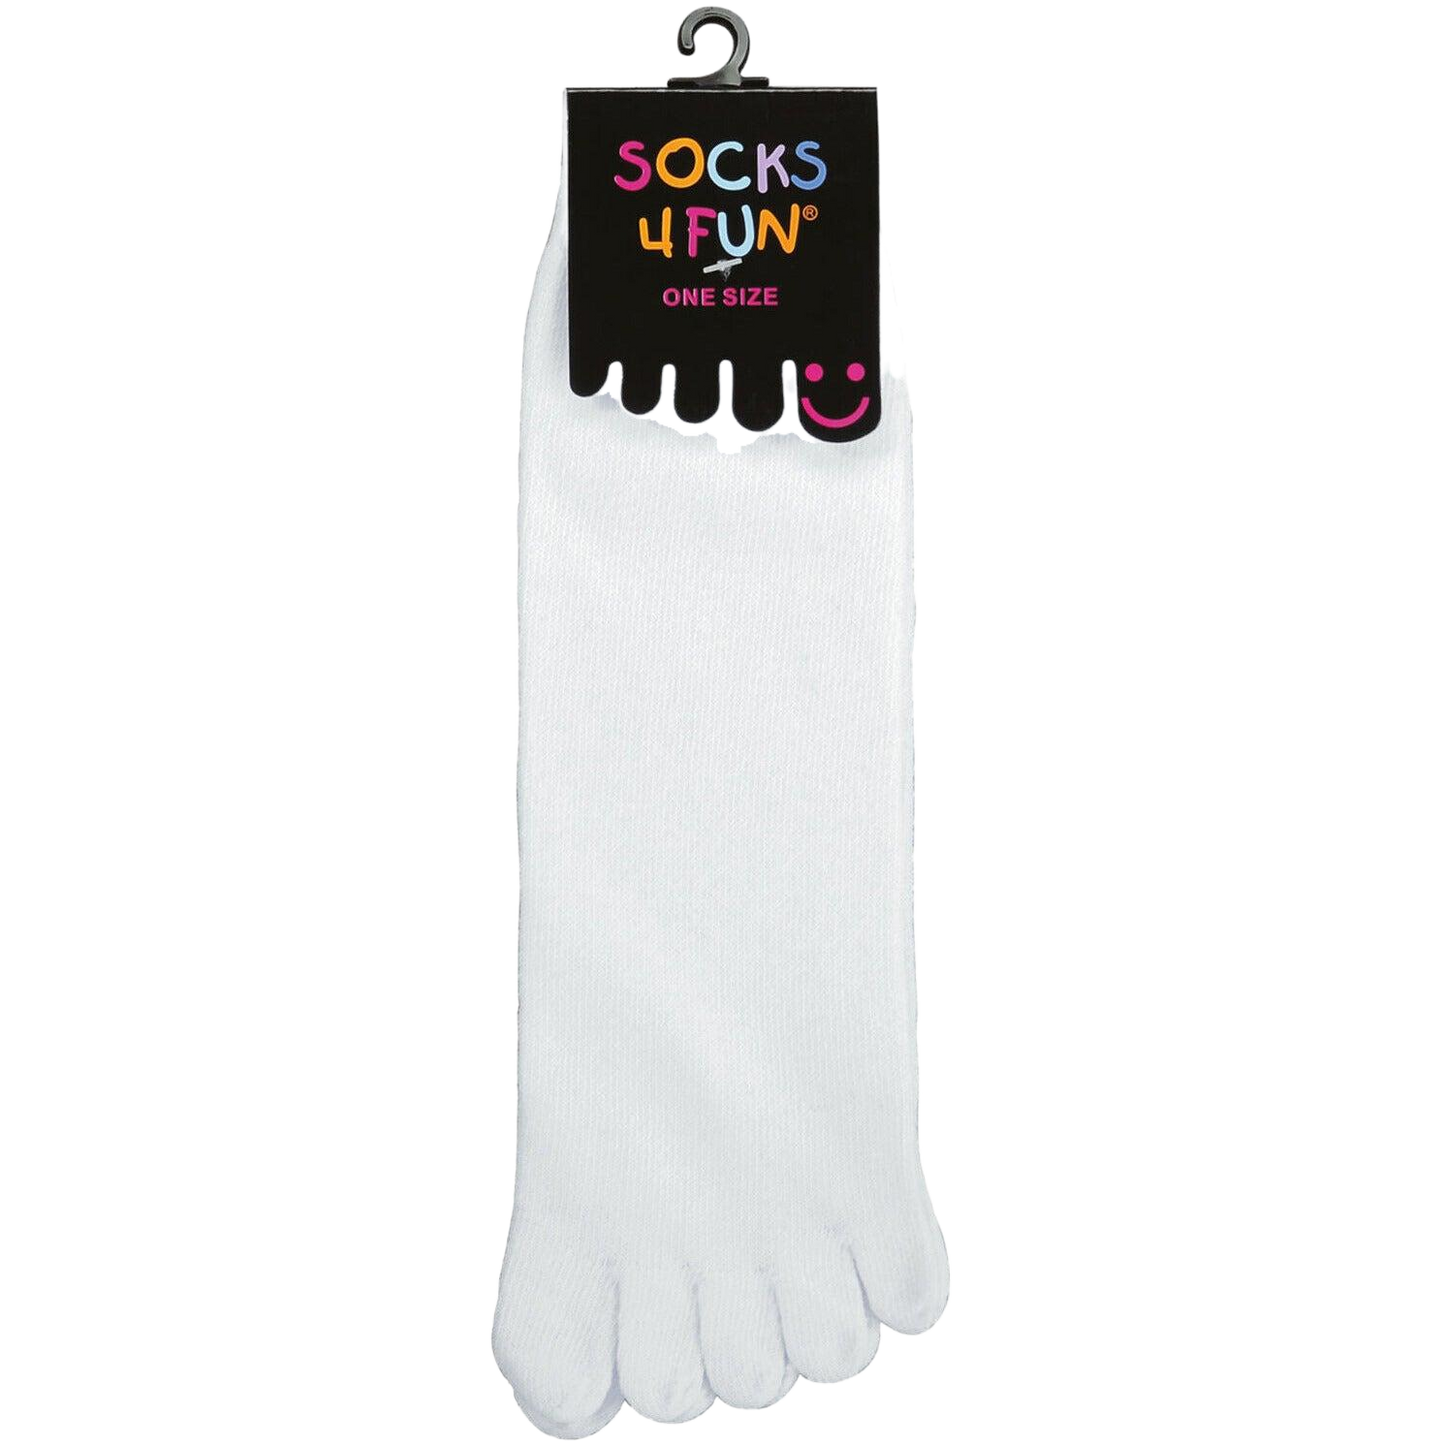 Das Bild zeigt die Zehensocke in der Farbe Weiß im ganzen mit Etikett das Material ist dünn ausgebildet und perfekt für den Sommer.